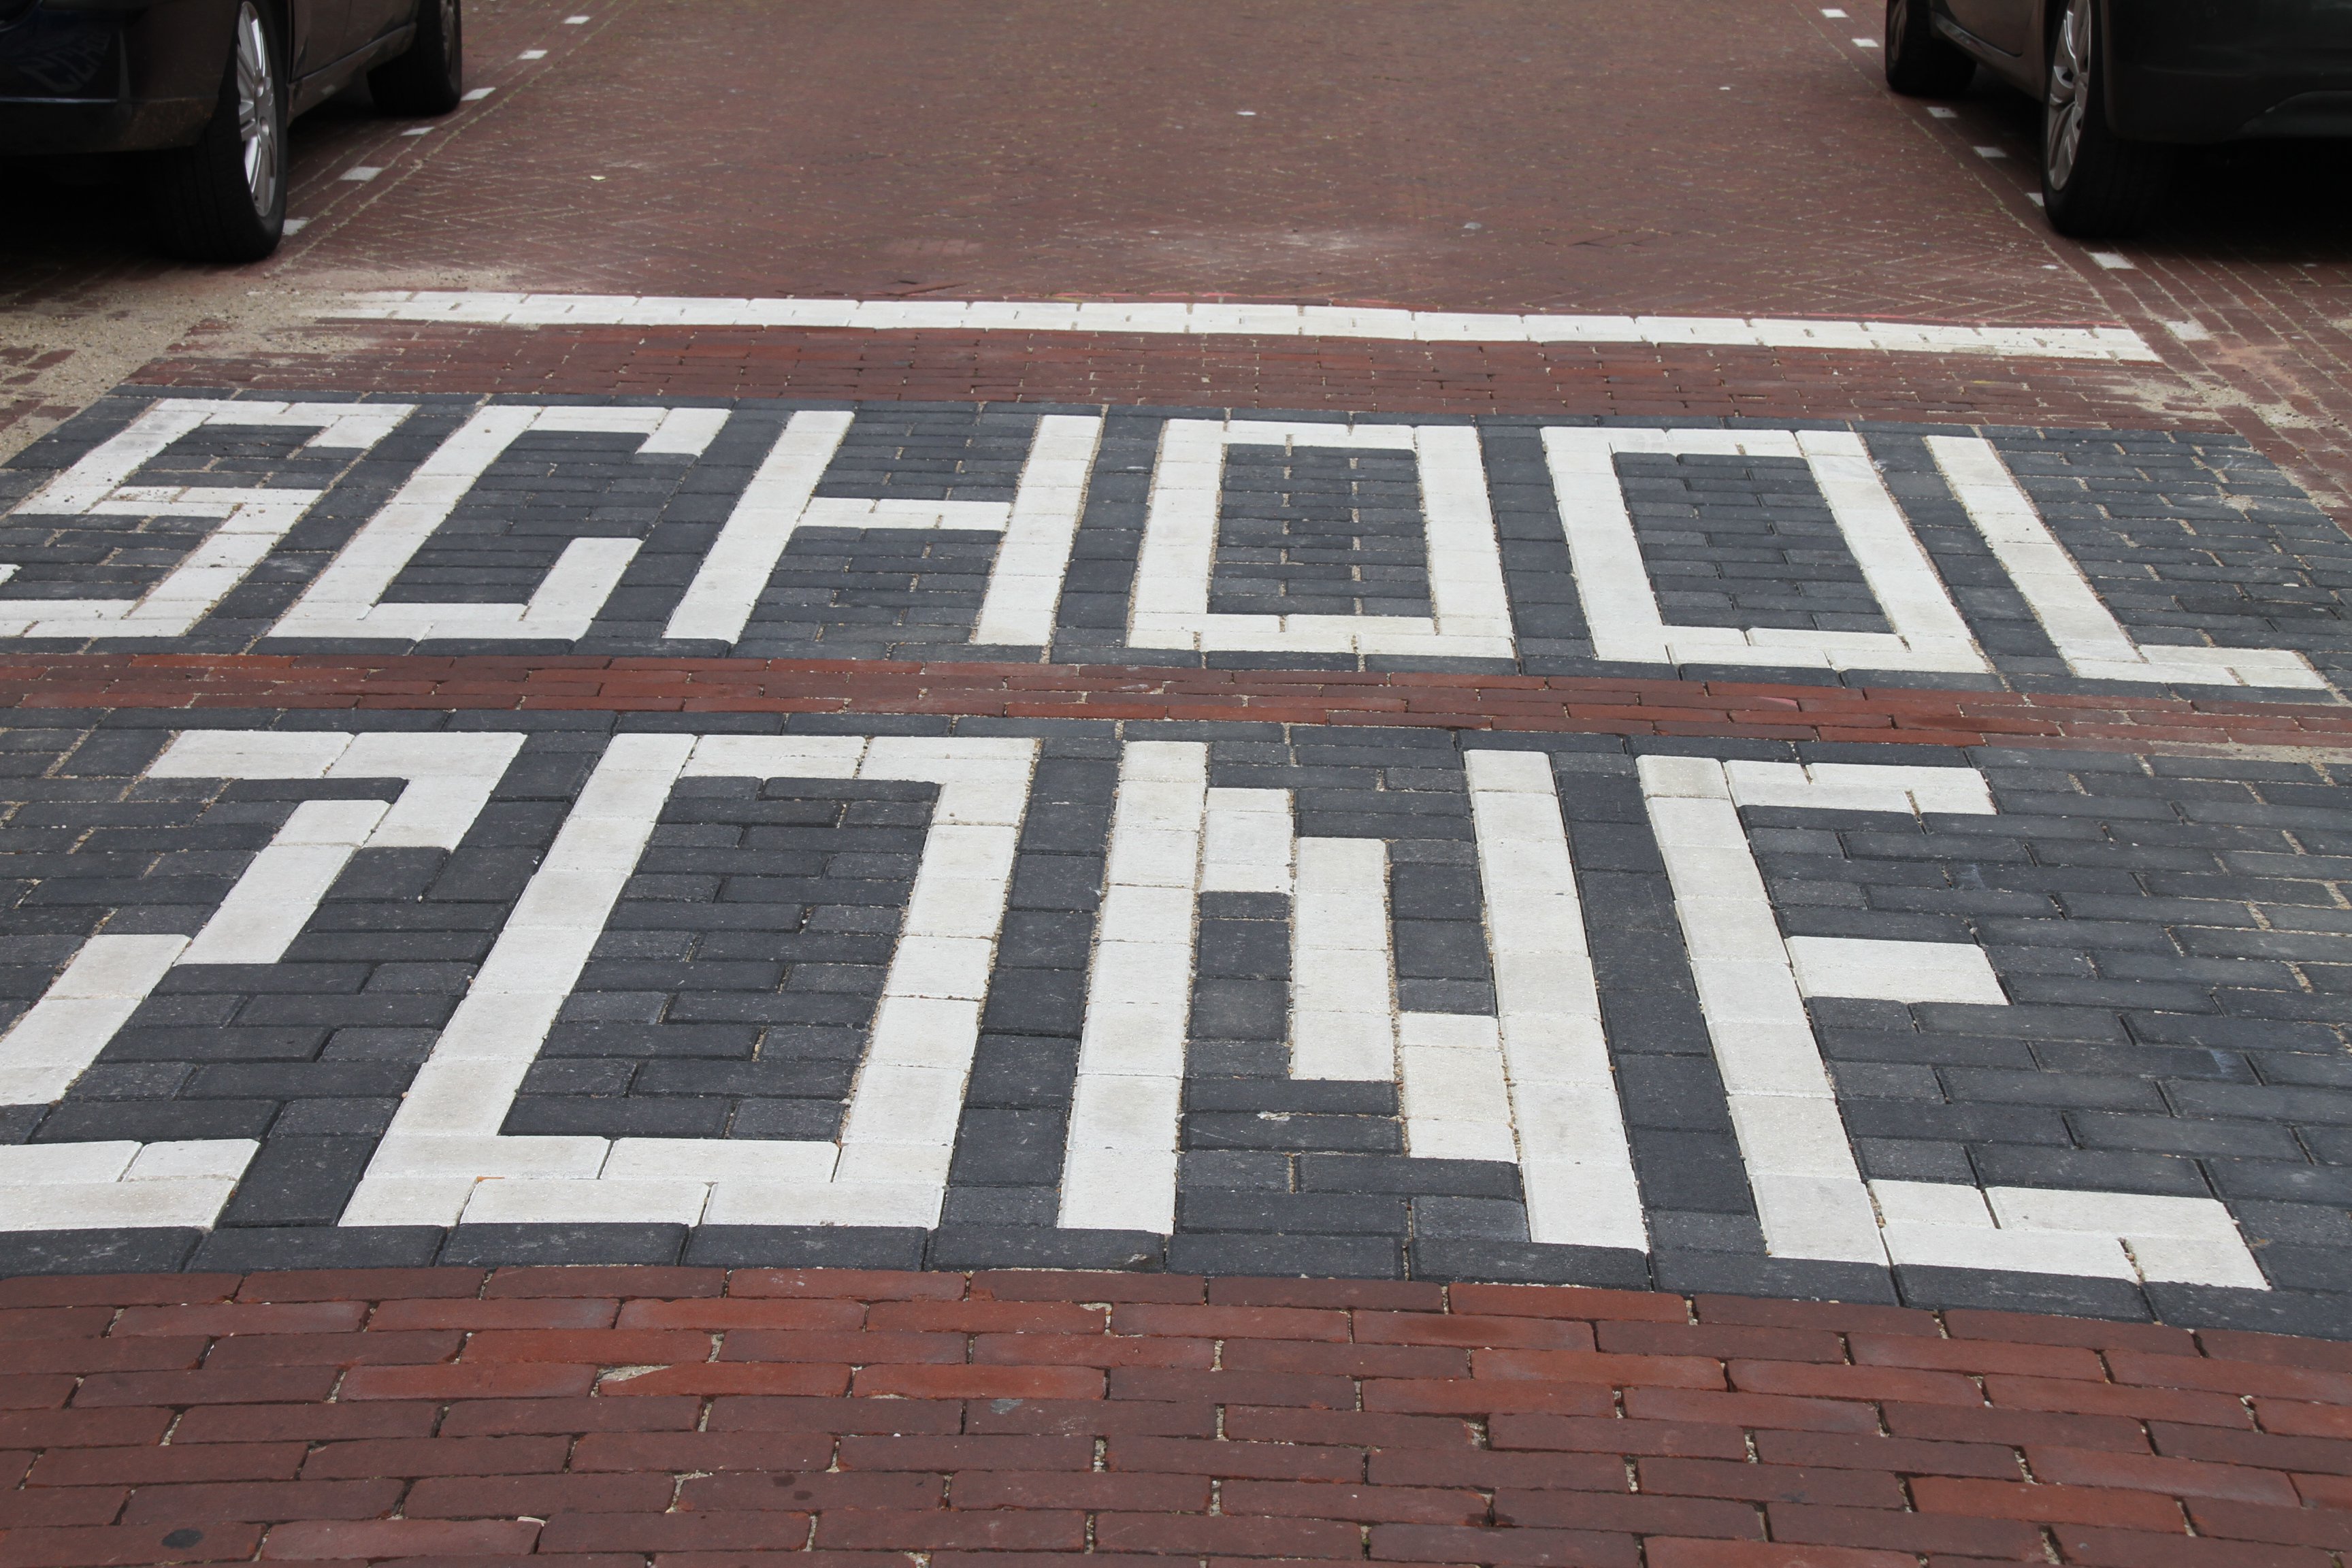 Straatstenen vormen de tekst: school zone